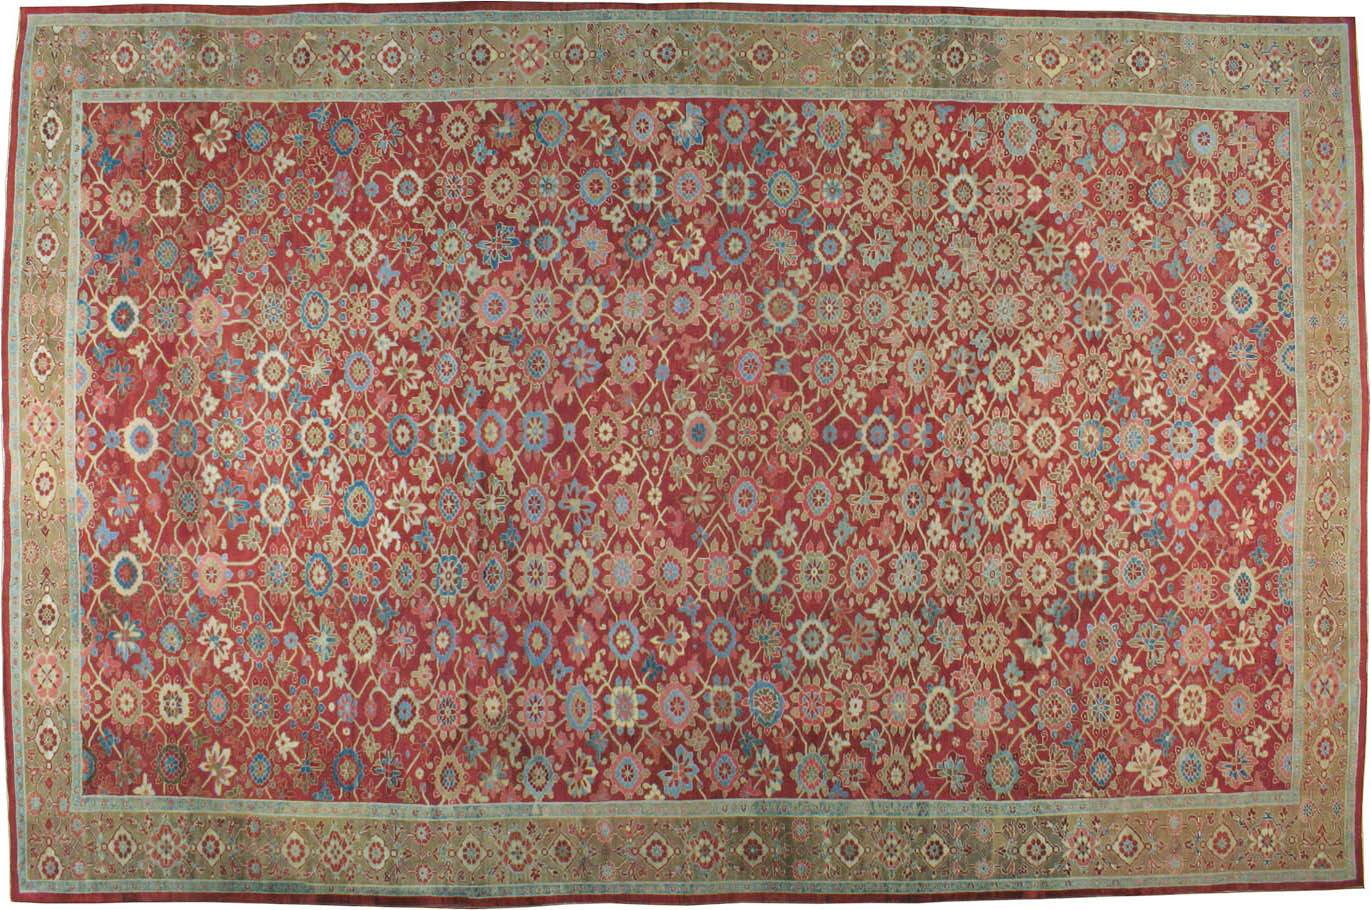 Antique sultan abad Carpet - # 53707